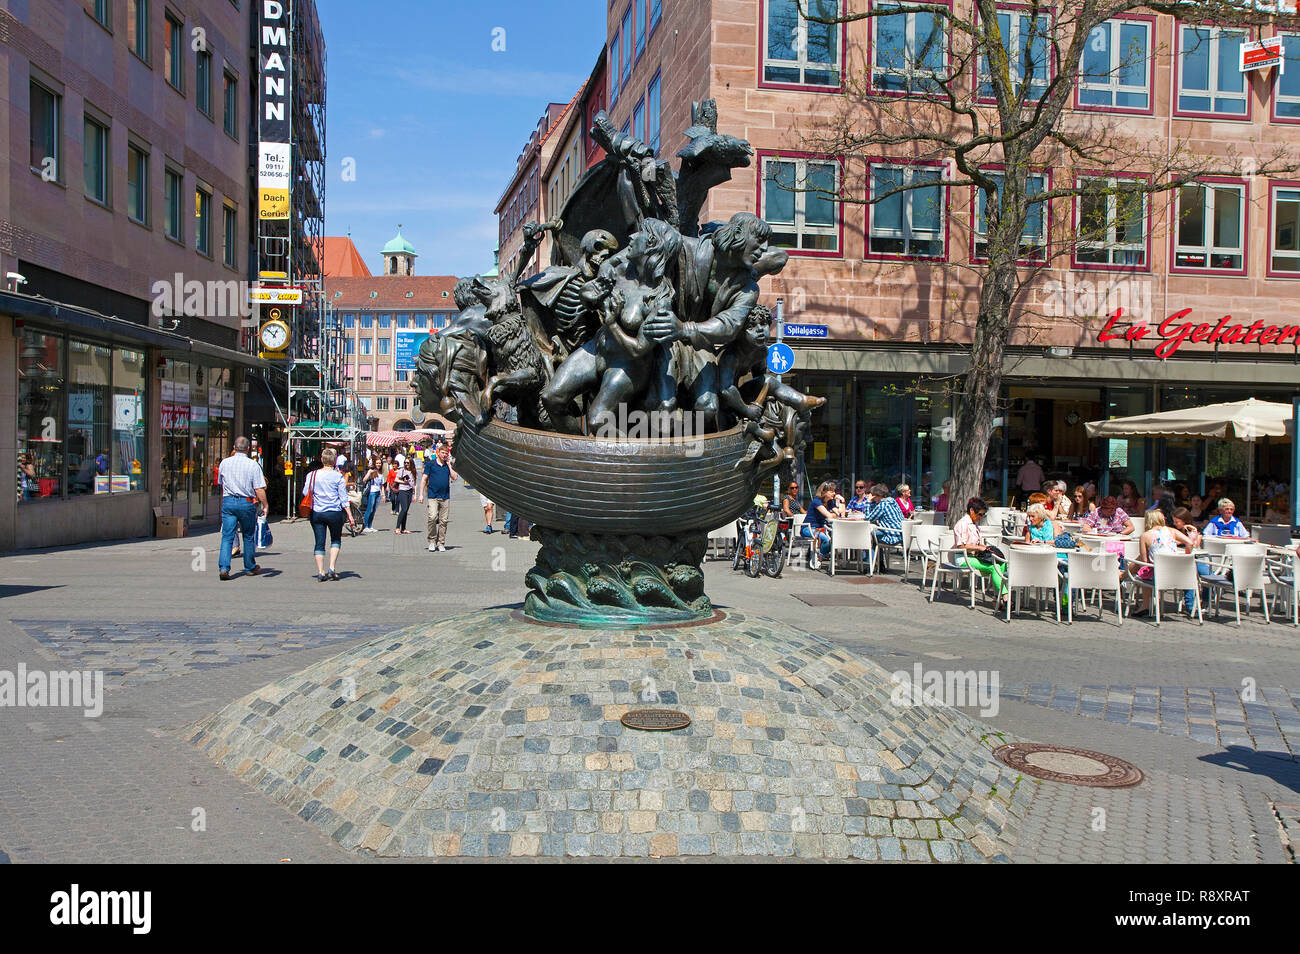 Straßencafe am Narrenschiff-Brunnen, Skulptur von Jürgen Weber, Altstadt, Nürnberg, Mittelfranken, Franken, Bayern, Deutschland | Narrenschiff fountai Stock Photo